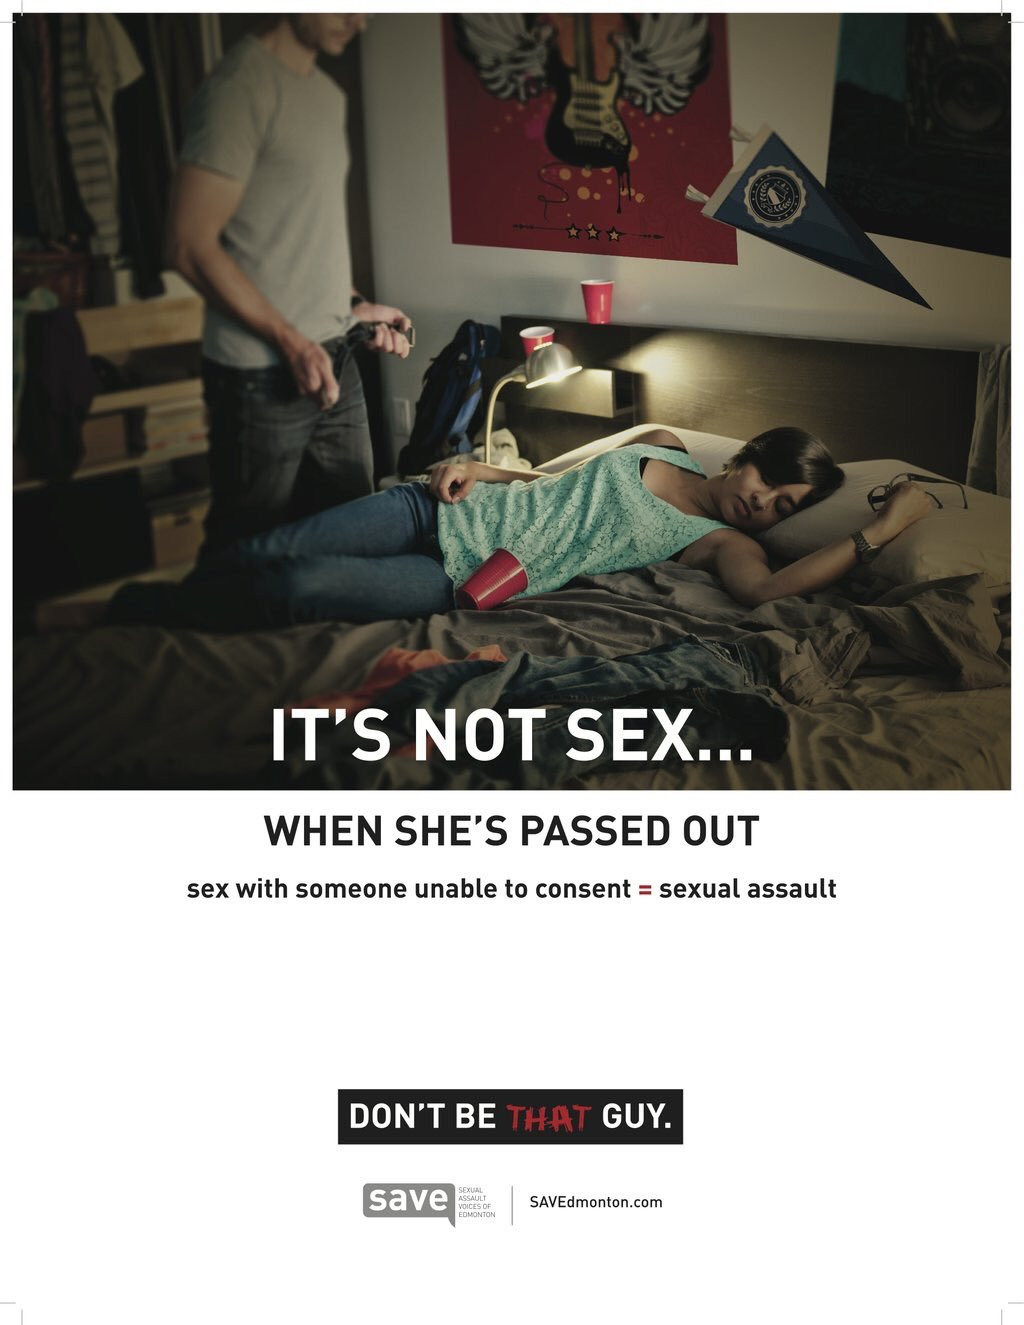  «Это не&nbsp;секс, если она в&nbsp;отключке. Секс с&nbsp;кем-то, не&nbsp;способным дать согласие = изнасилование. Не&nbsp;будь таким». Плакат кампании против насилия savedmonton.com